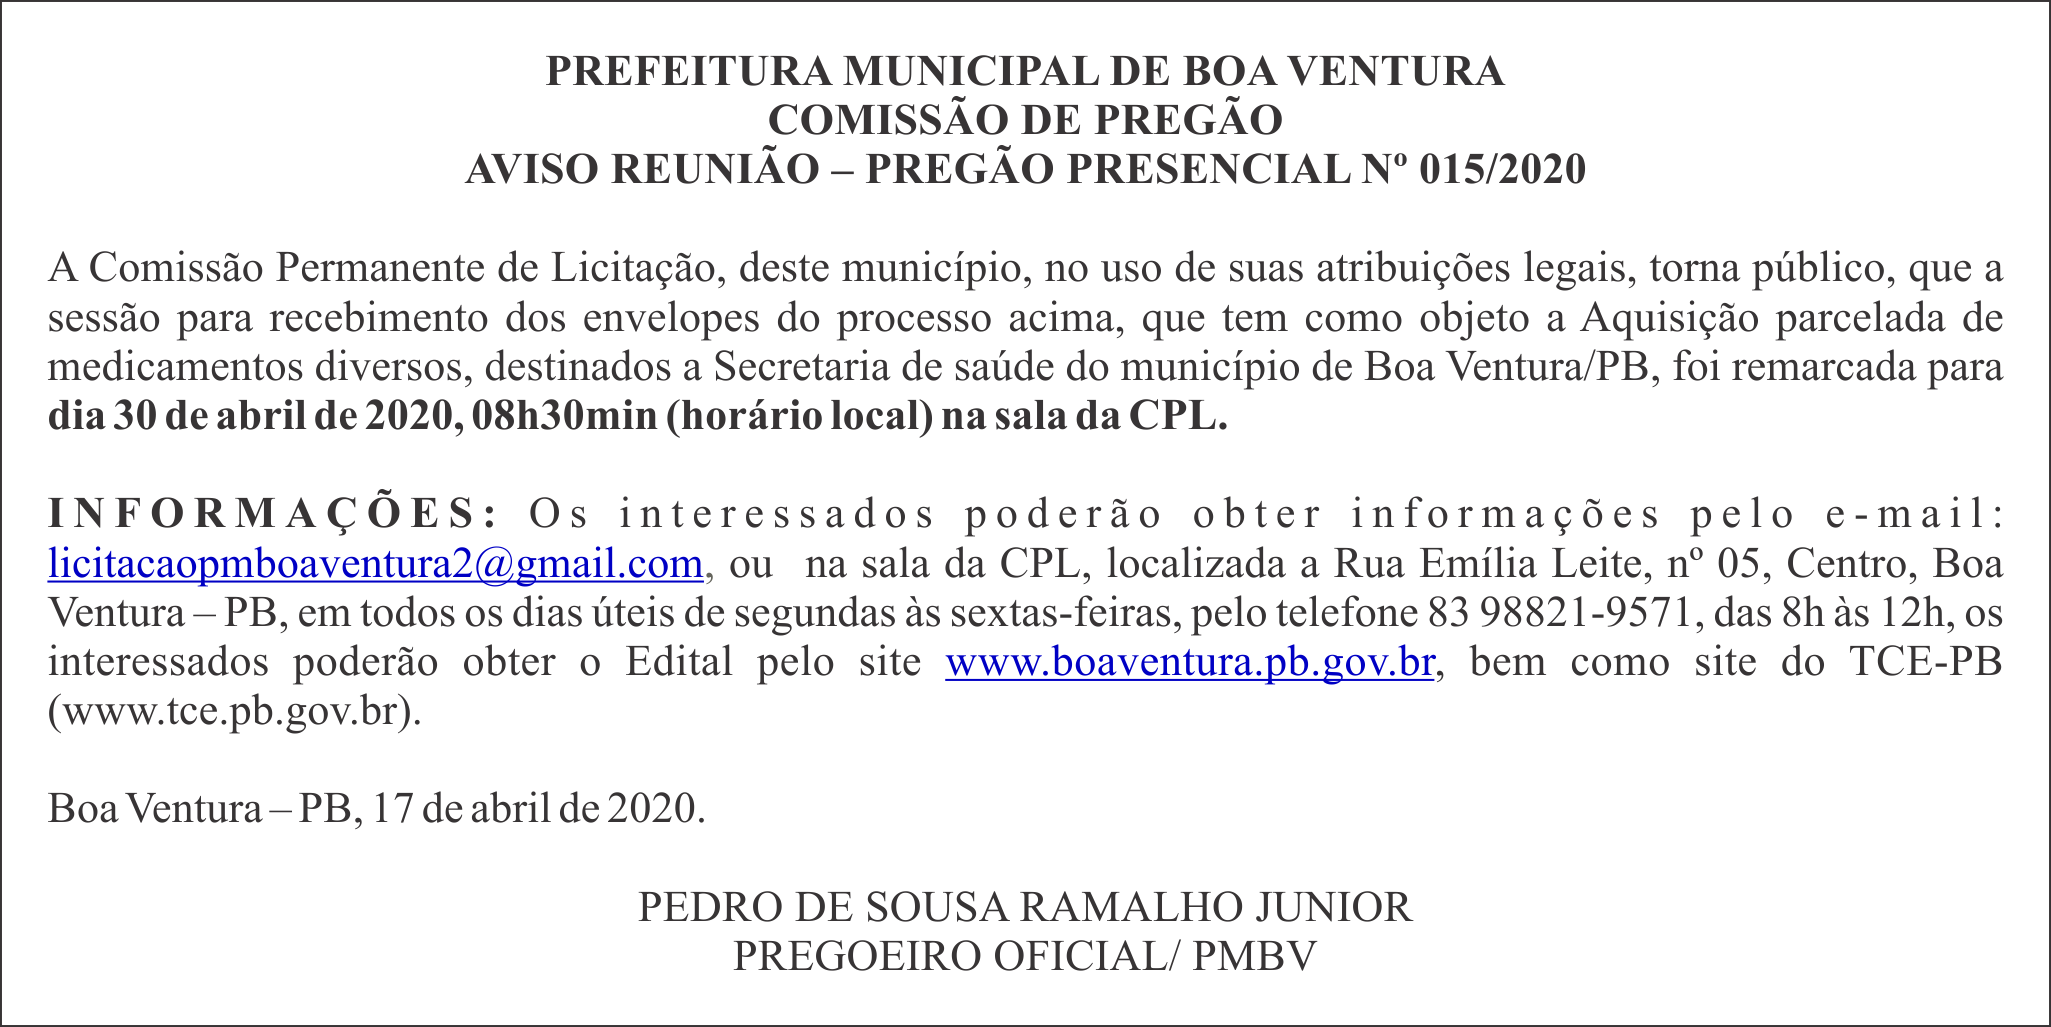 PREFEITURA MUNICIPAL DE BOA VENTURA – AVISO REUNIÃO – PREGÃO PRESENCIAL Nº 015/2020